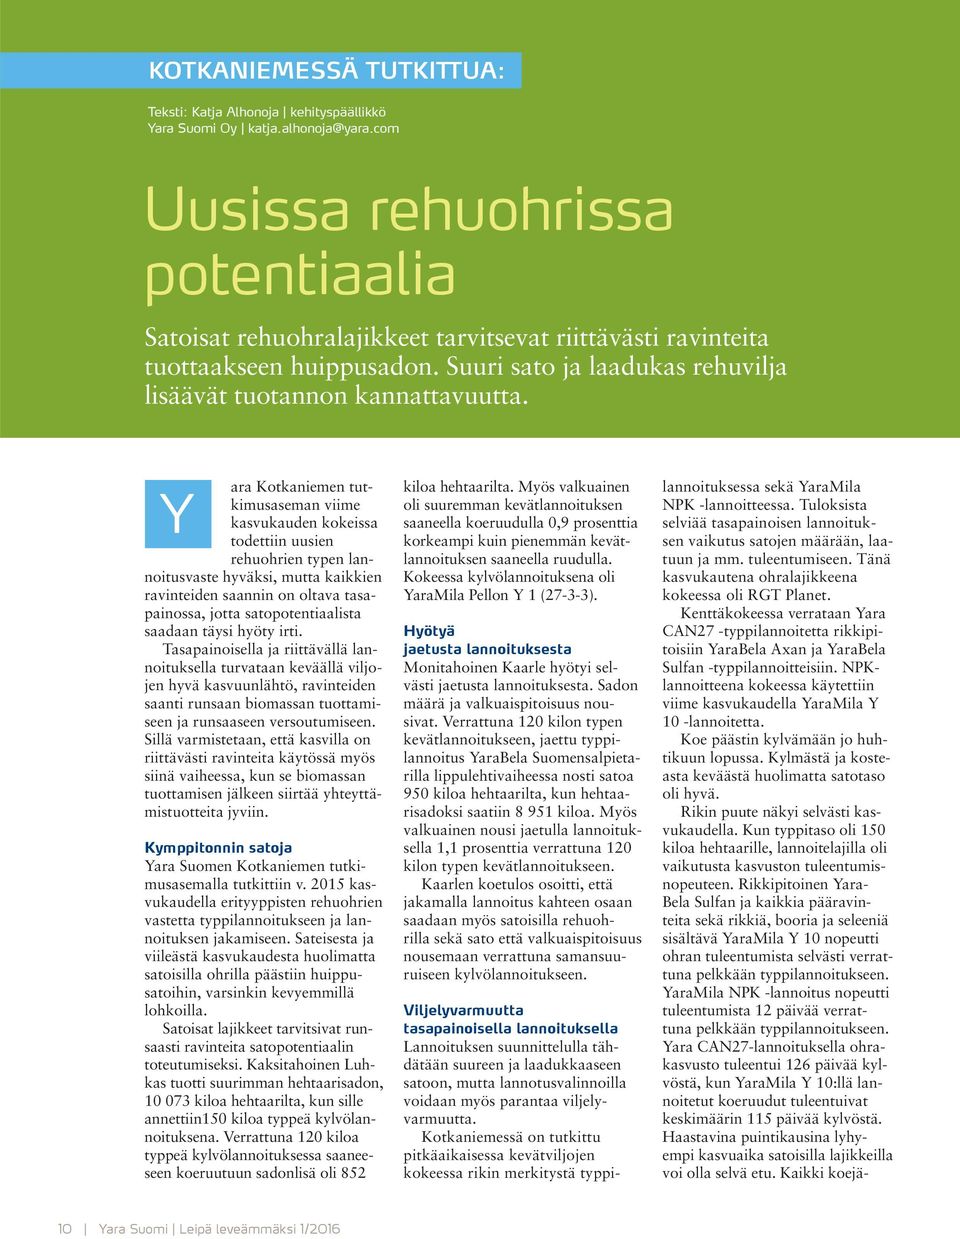 Y Kymppitonnin satoja Yara Suomen Kotkaniemen tutkimusasemalla tutkittiin v. 2015 kasvukaudella erityyppisten rehuohrien vastetta typpilannoitukseen ja lannoituksen jakamiseen.